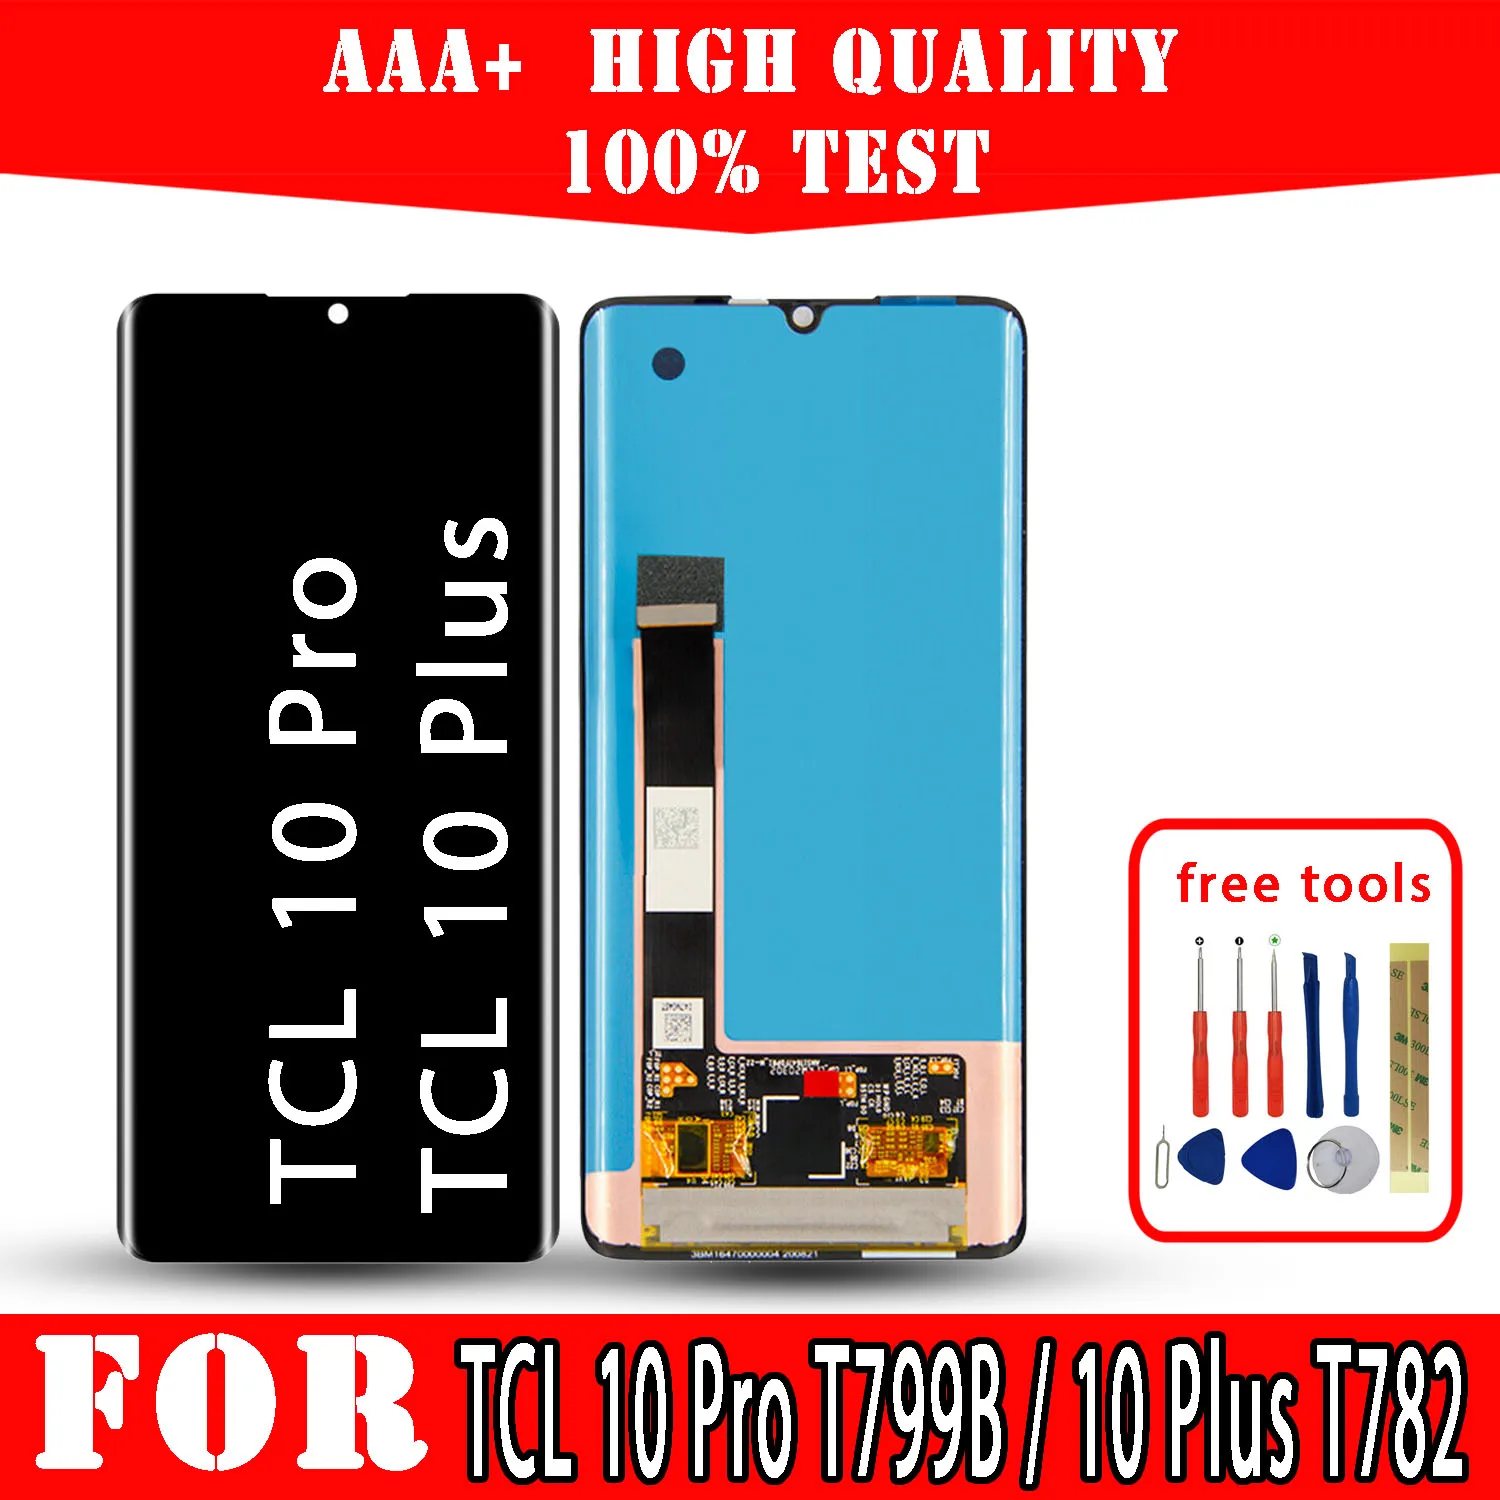 Pantalla LCD Original para móvil, piezas de repuesto de pantalla táctil de calidad superior, herramientas gratuitas de reparación de teléfonos, para TCL 10 Pro, T799B, 10 Plus, T782H